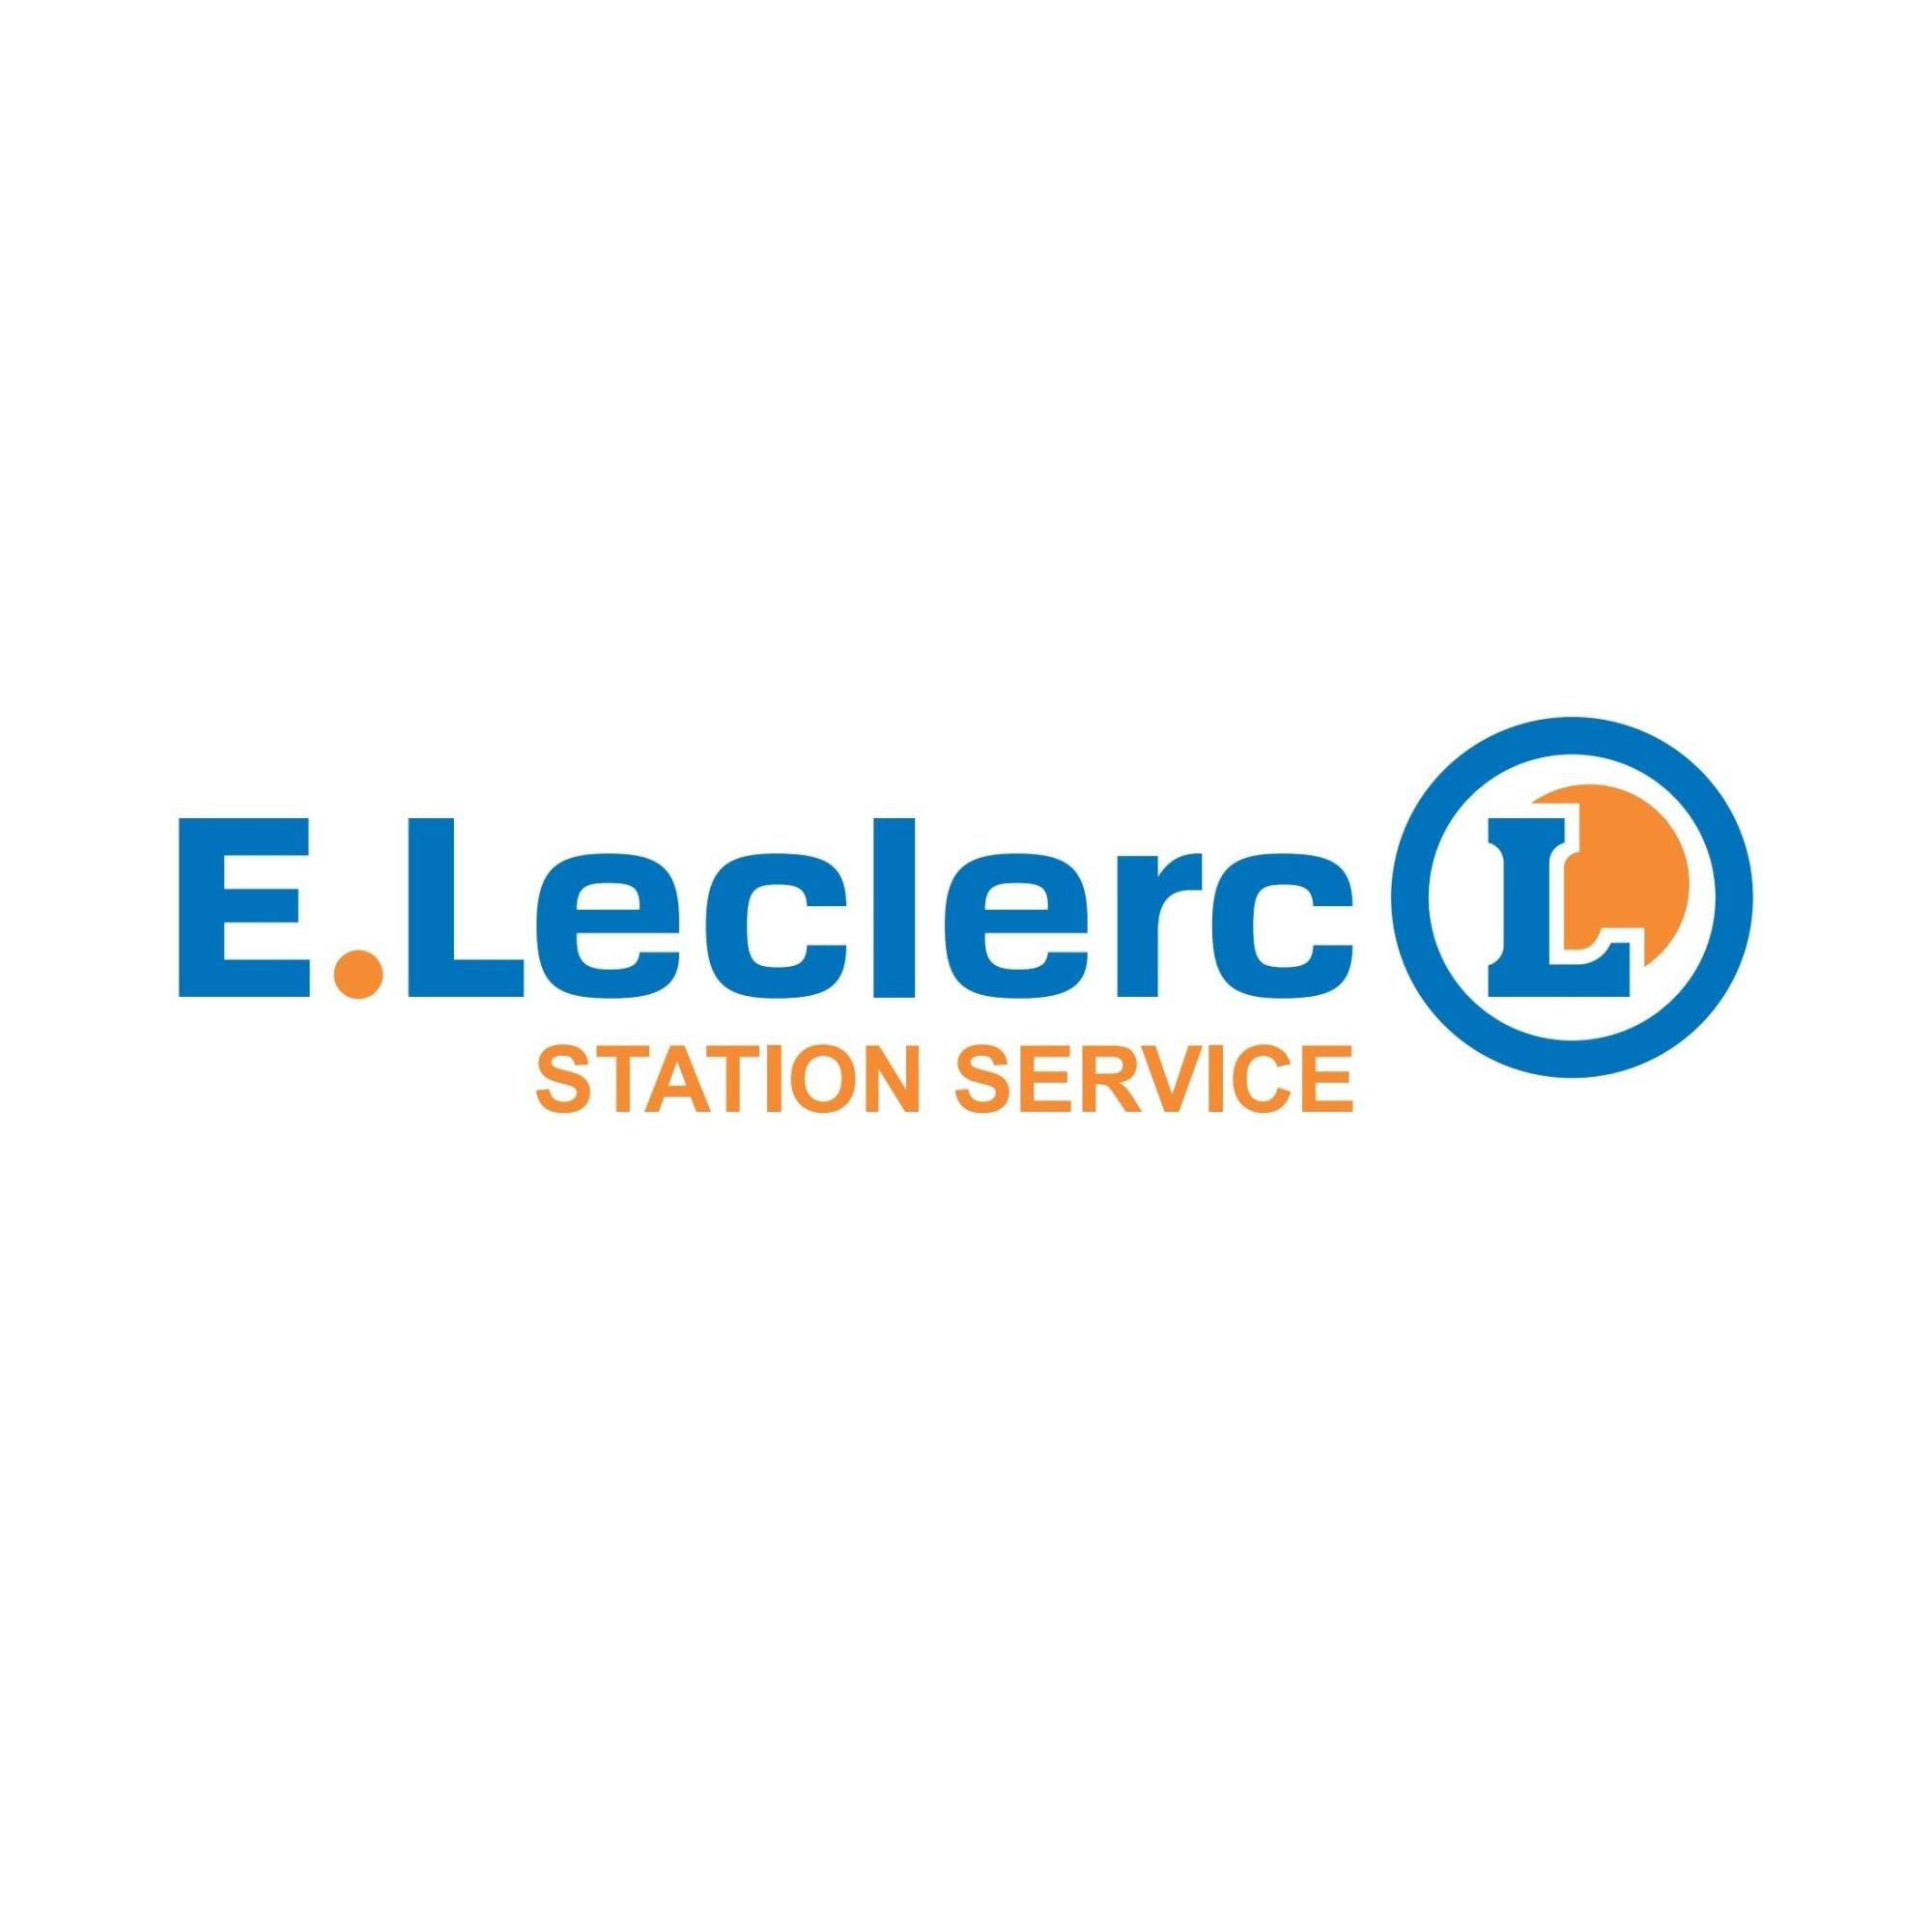 E.leclerc Station Service Firminy